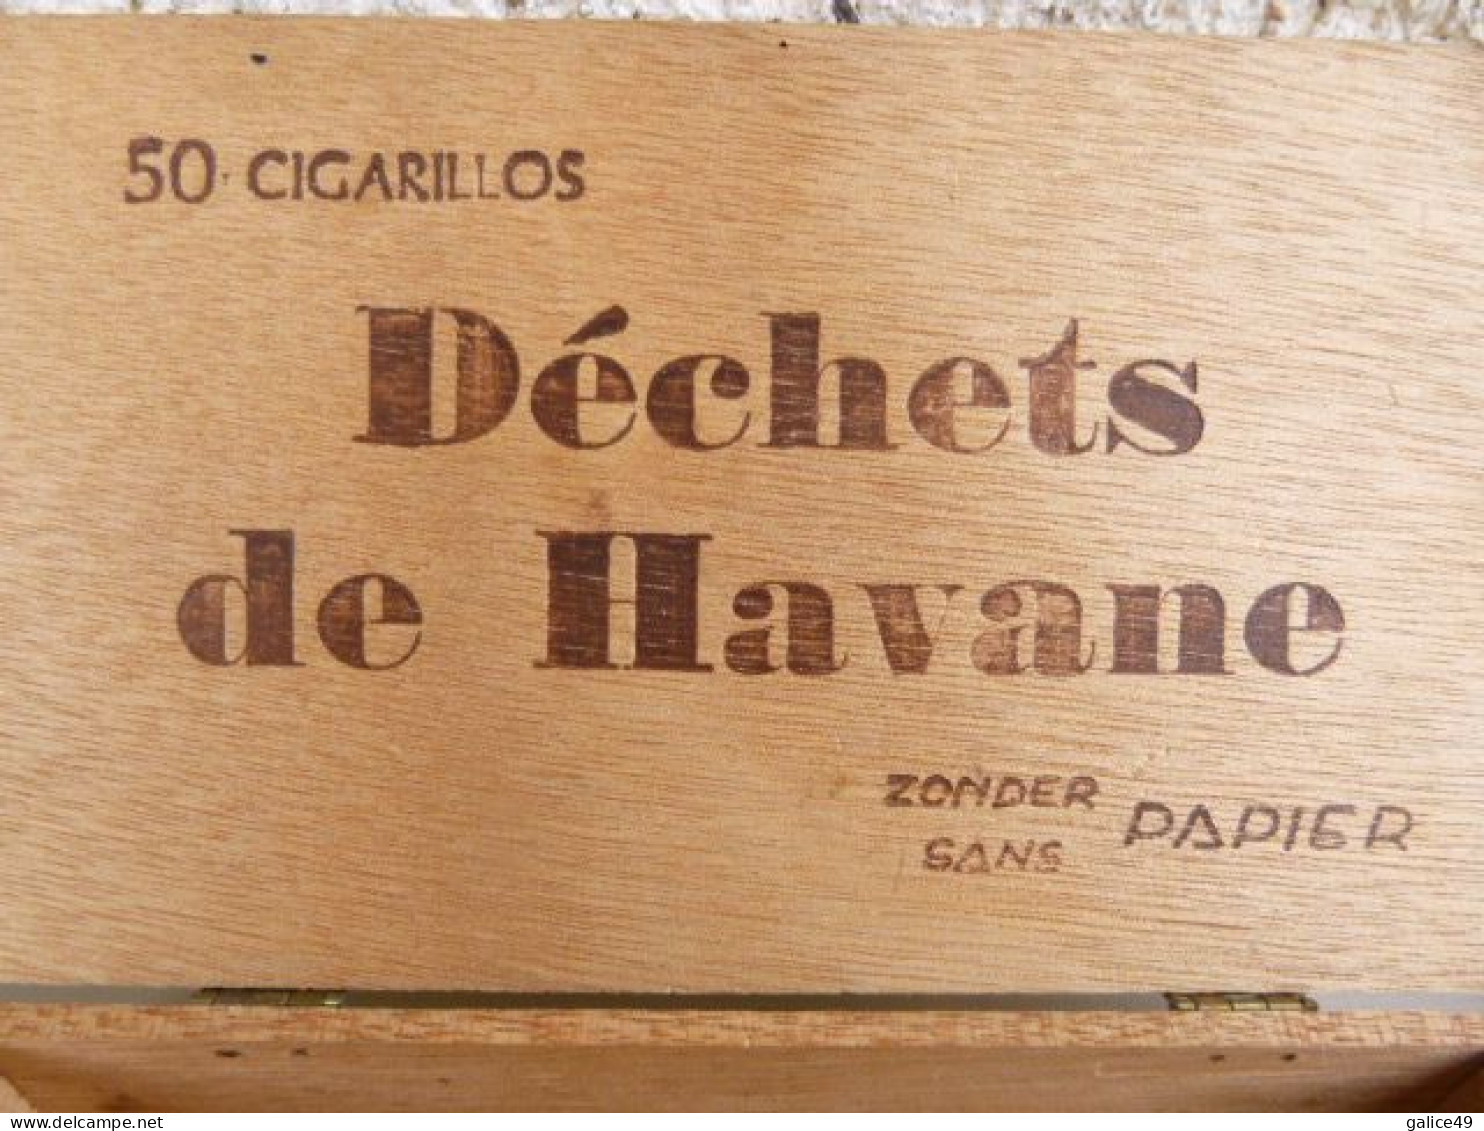 Boite En Bois Vide Déchets De Havane - Altri & Non Classificati